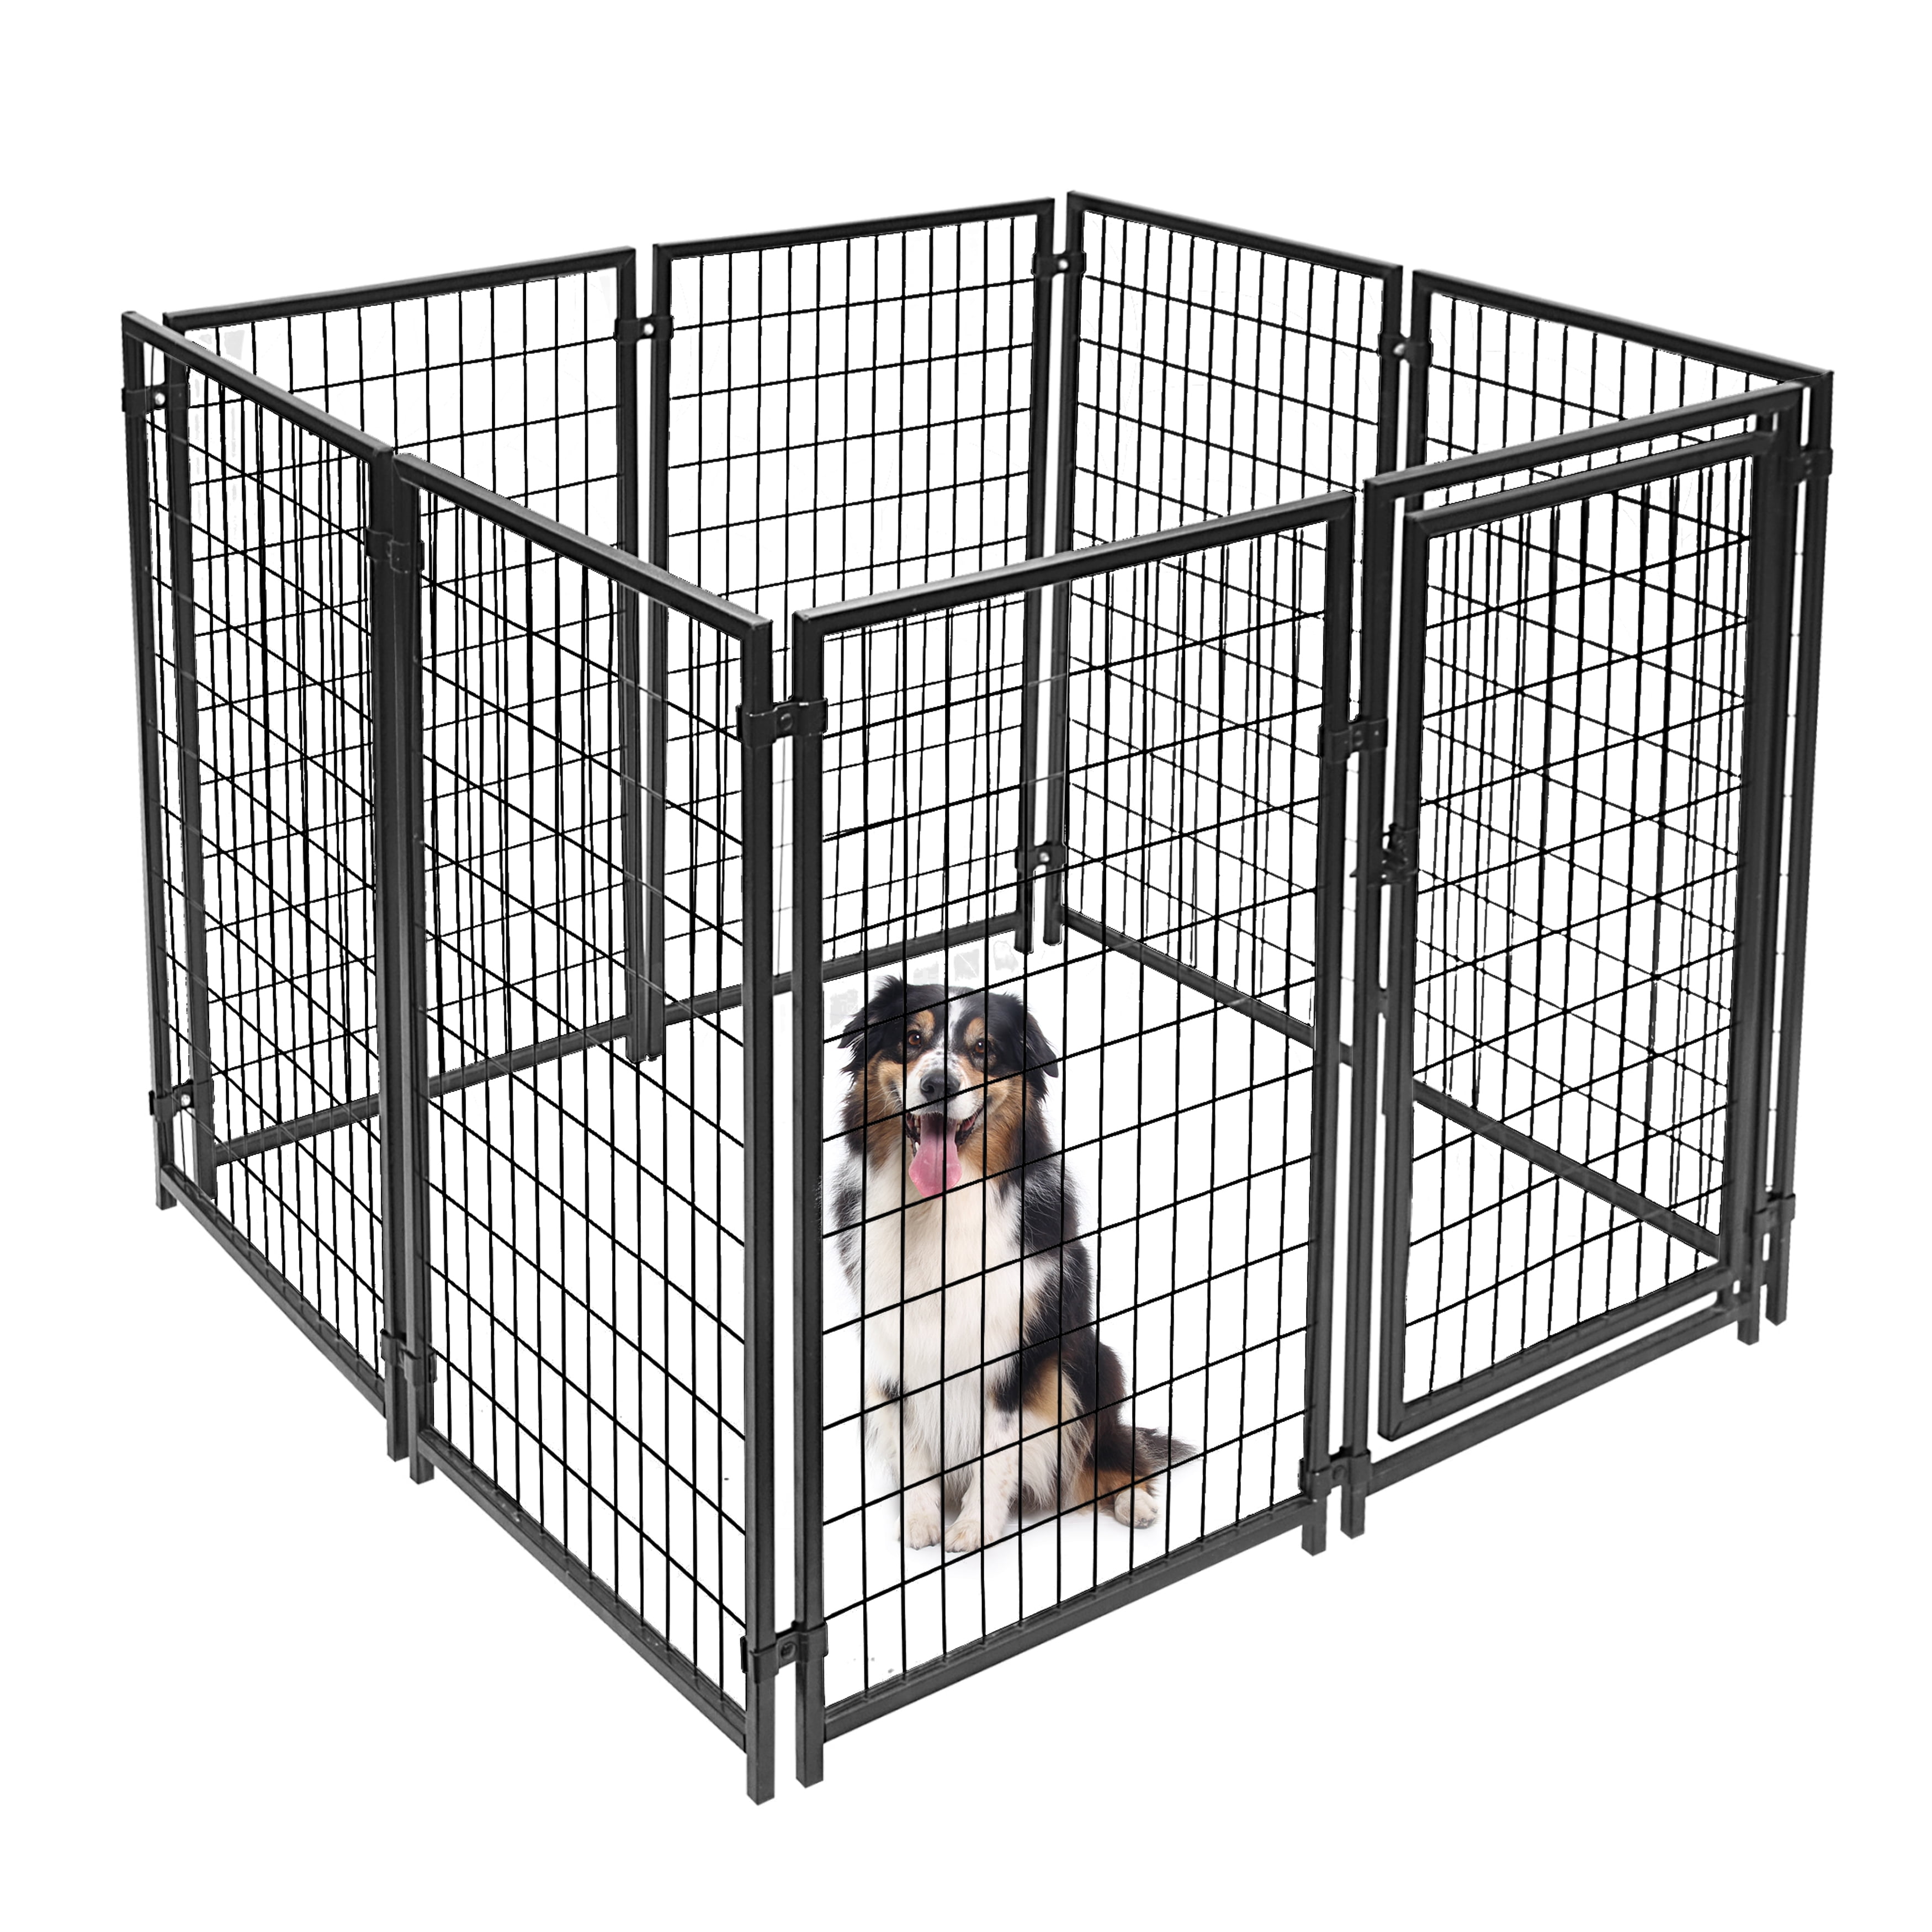 ALEKO DK5X5X4SQ Pet System DIY Box Kennel Dog Kennel Playpen Chicken Coop Hen House 5 x 5 x 4 Feet,Black 